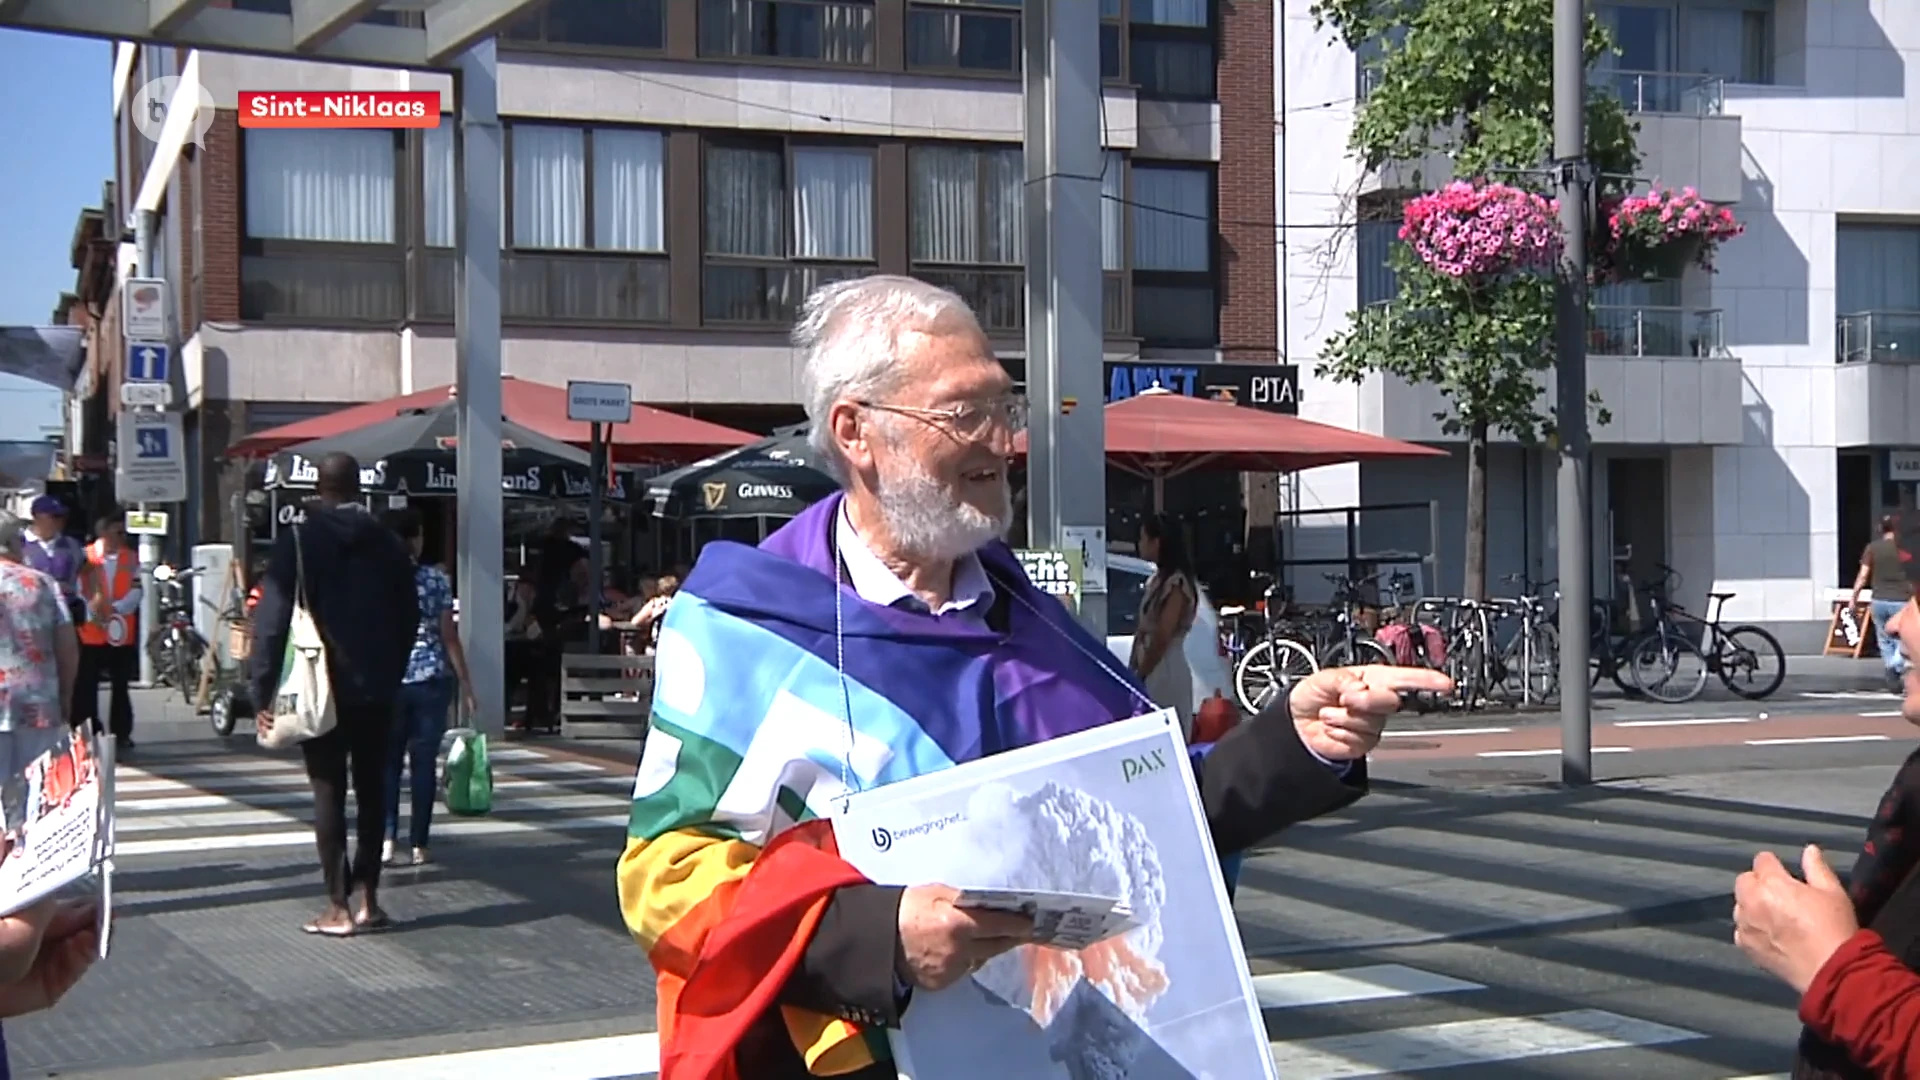 Vredesactie met petitie tegen nucleaire wapens bij marktgangers in Sint-Niklaas